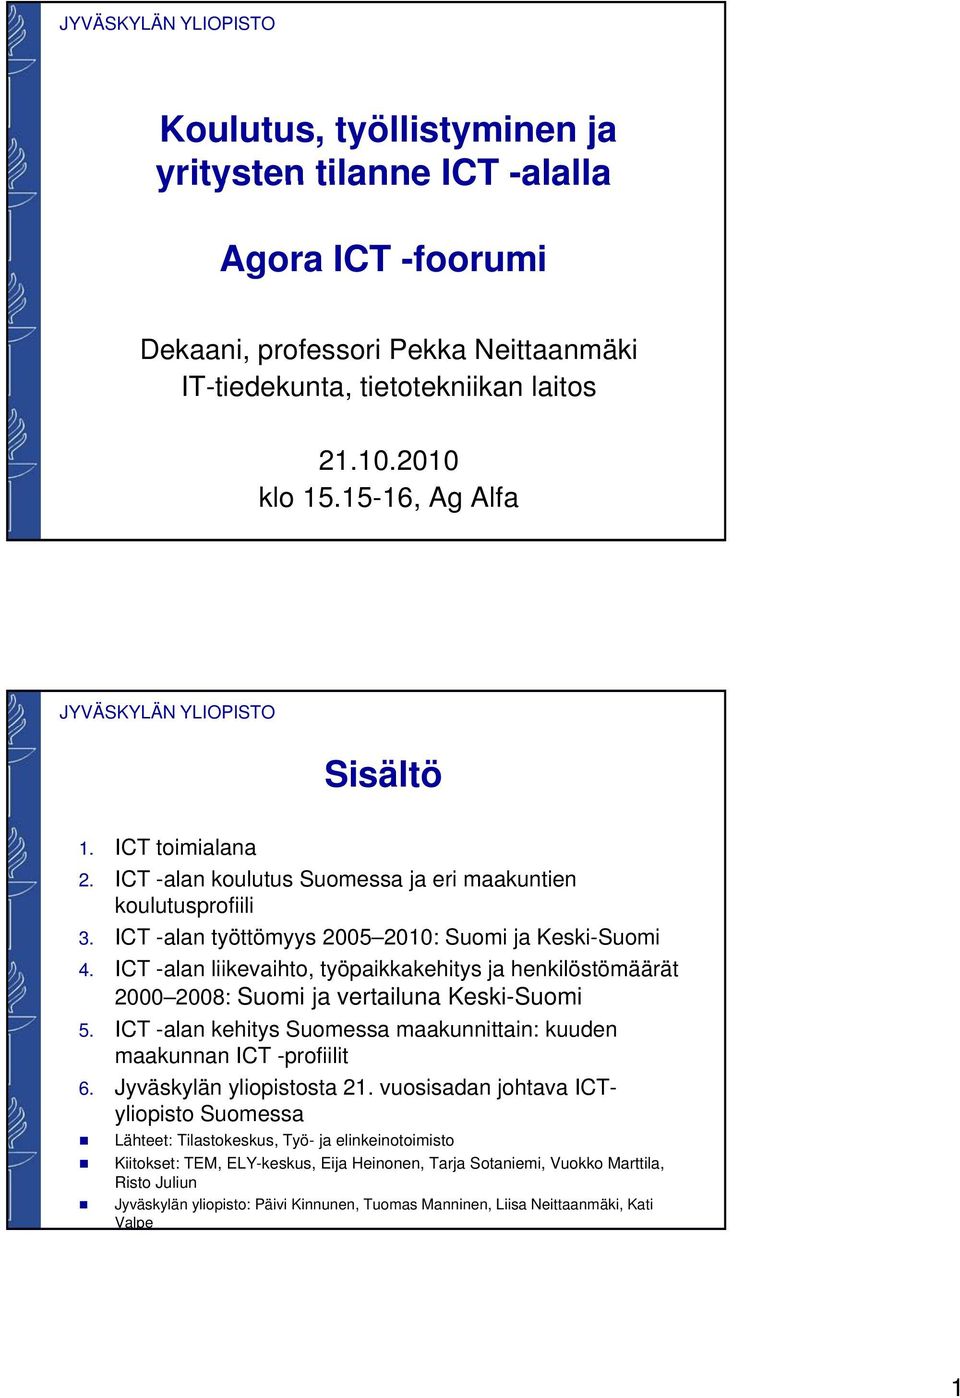 ICT -alan liikevaihto, työpaikkakehitys ja henkilöstömäärät 2 28: Suomi ja vertailuna Keski-Suomi 5. ICT -alan kehitys Suomessa maakunnittain: kuuden maakunnan ICT -profiilit 6.